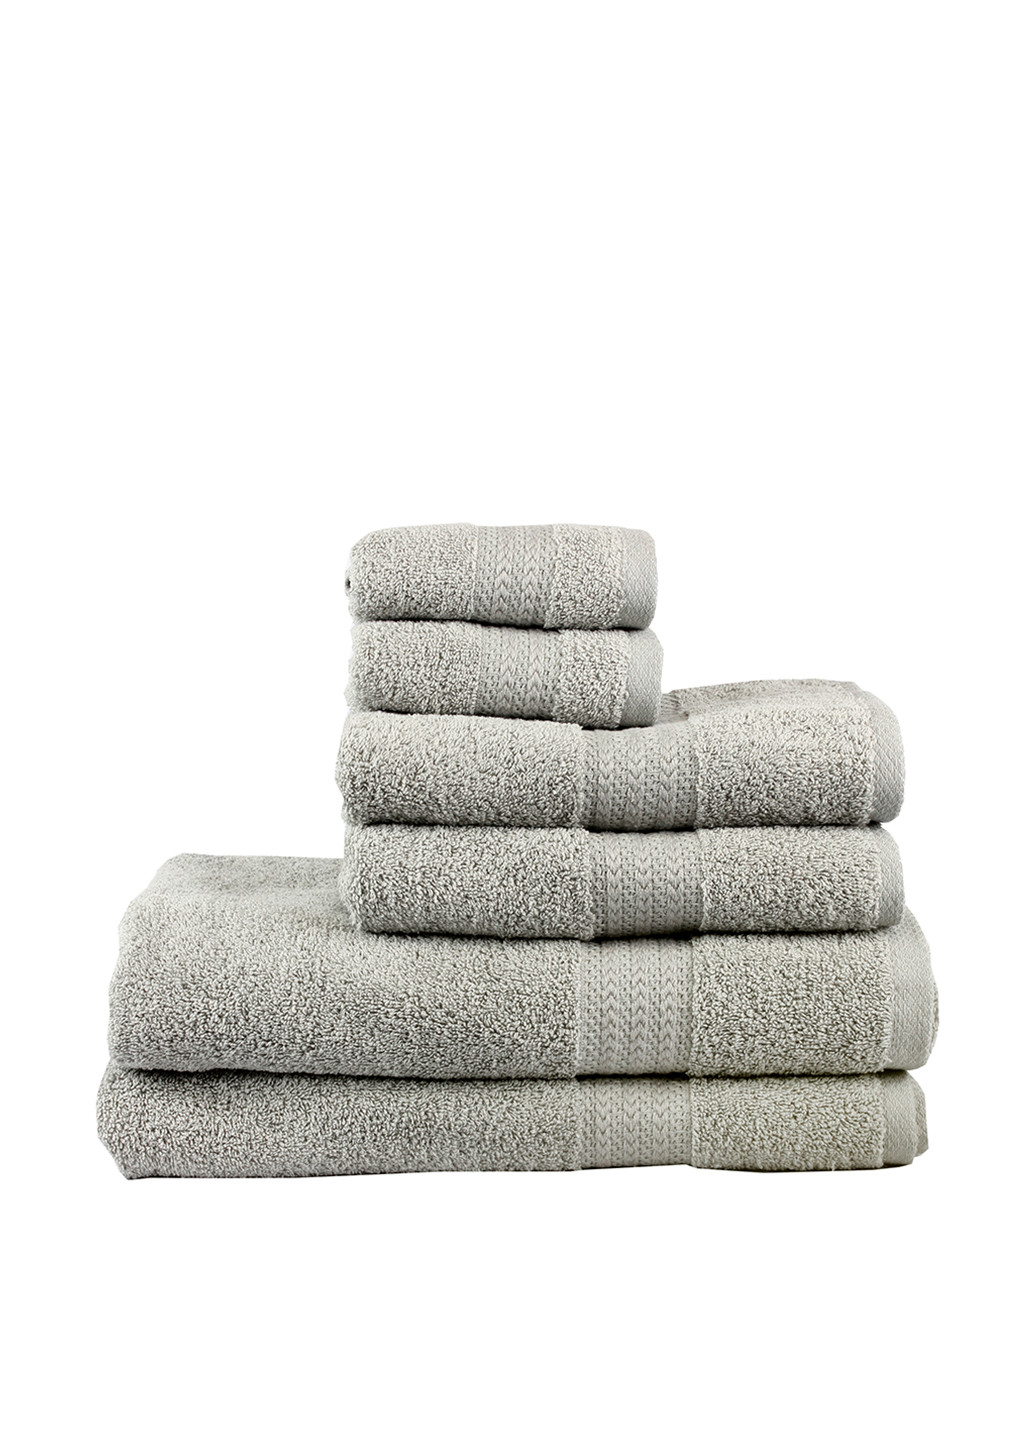 Hobby полотенце, 70х140 см полоска серый производство - Турция